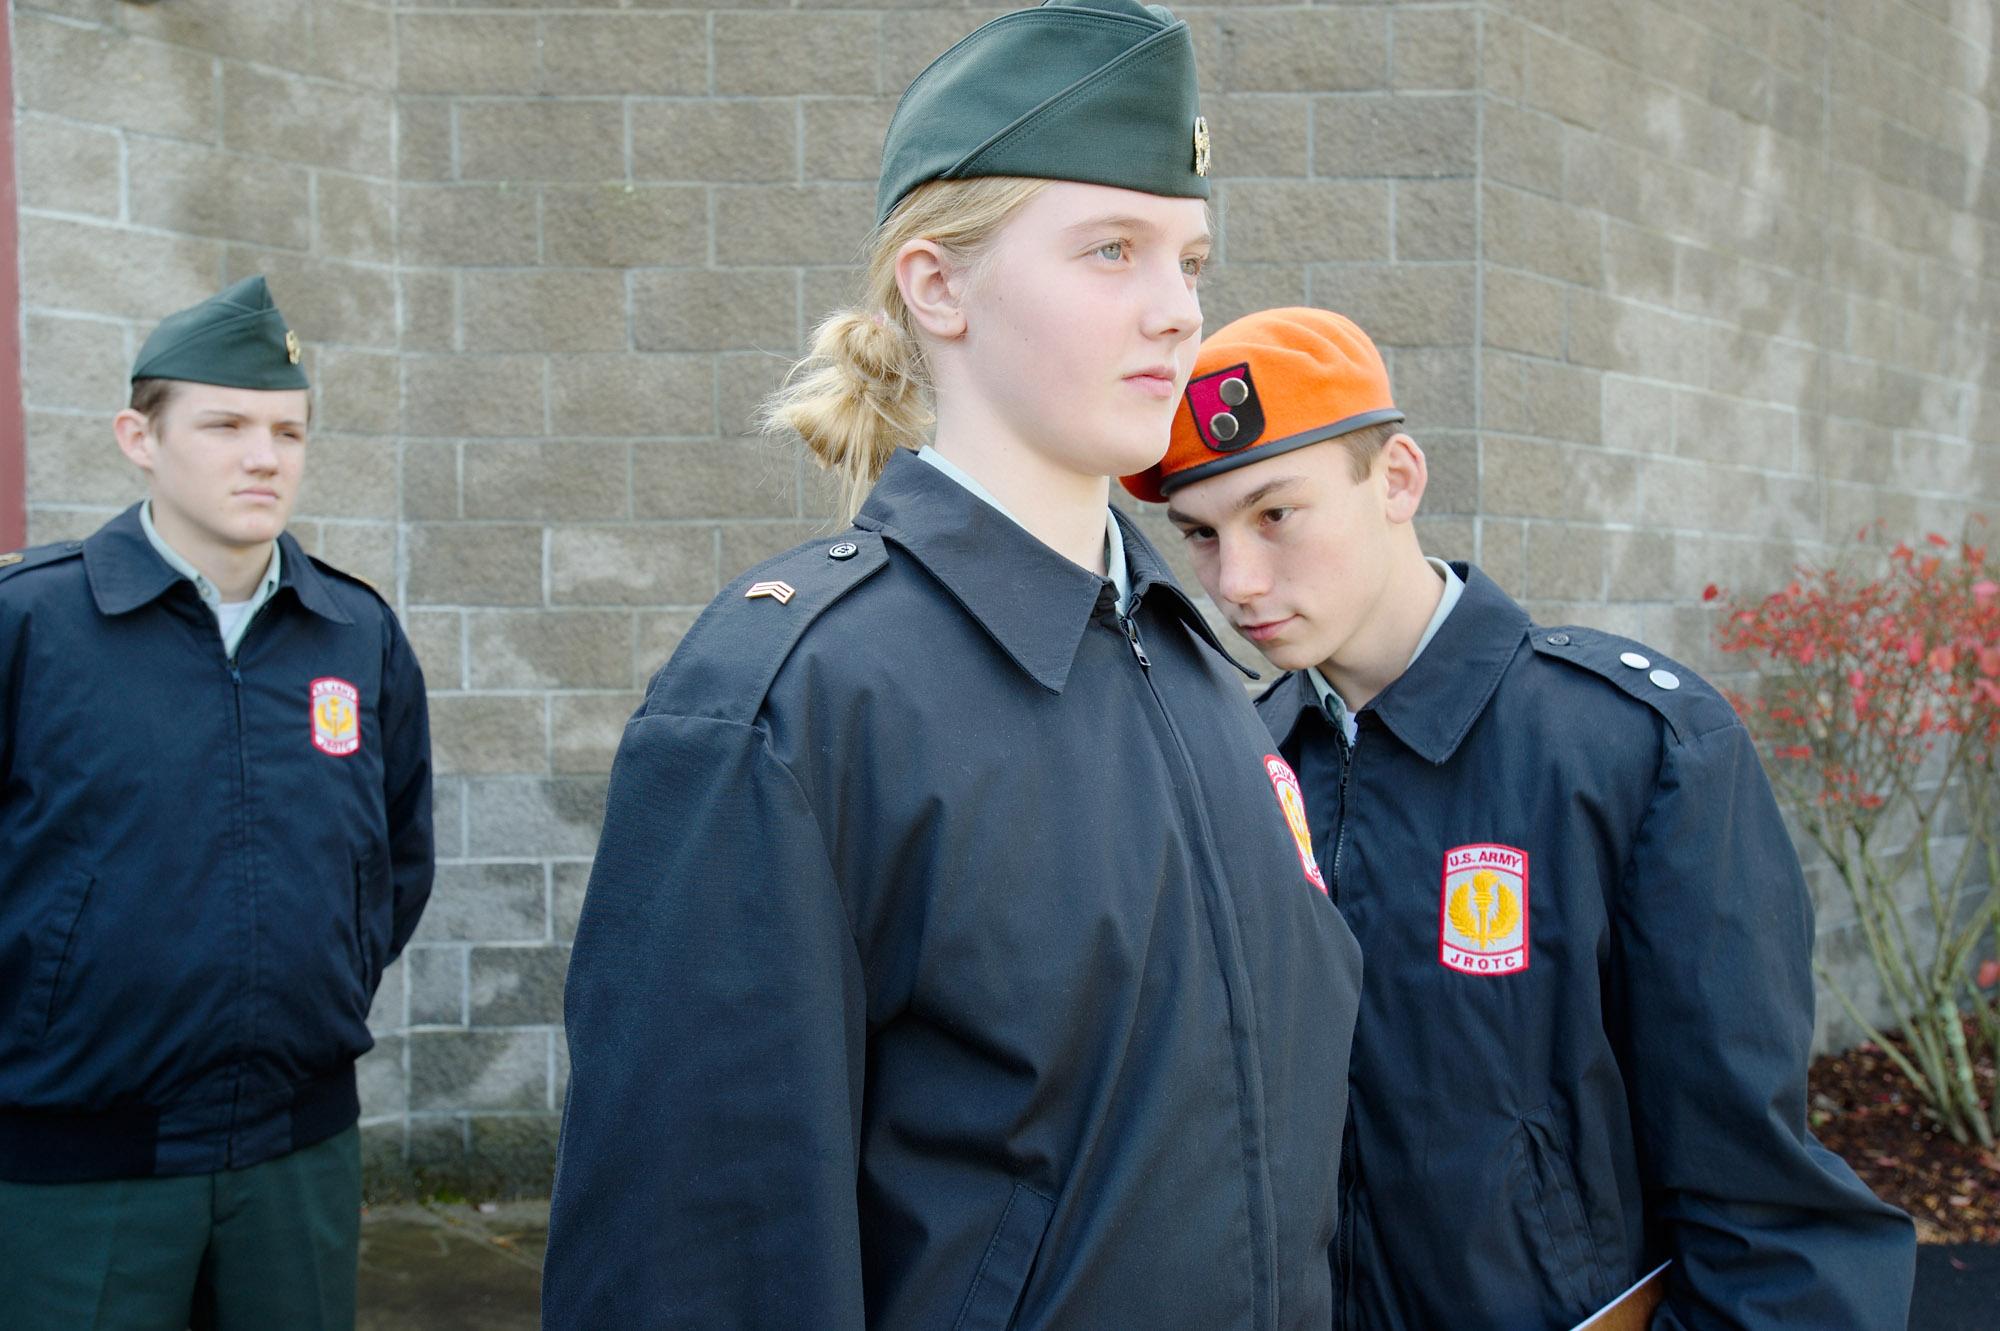 Cadets - Uniform Inspection Day. Jeremy, commander of the JROTC...